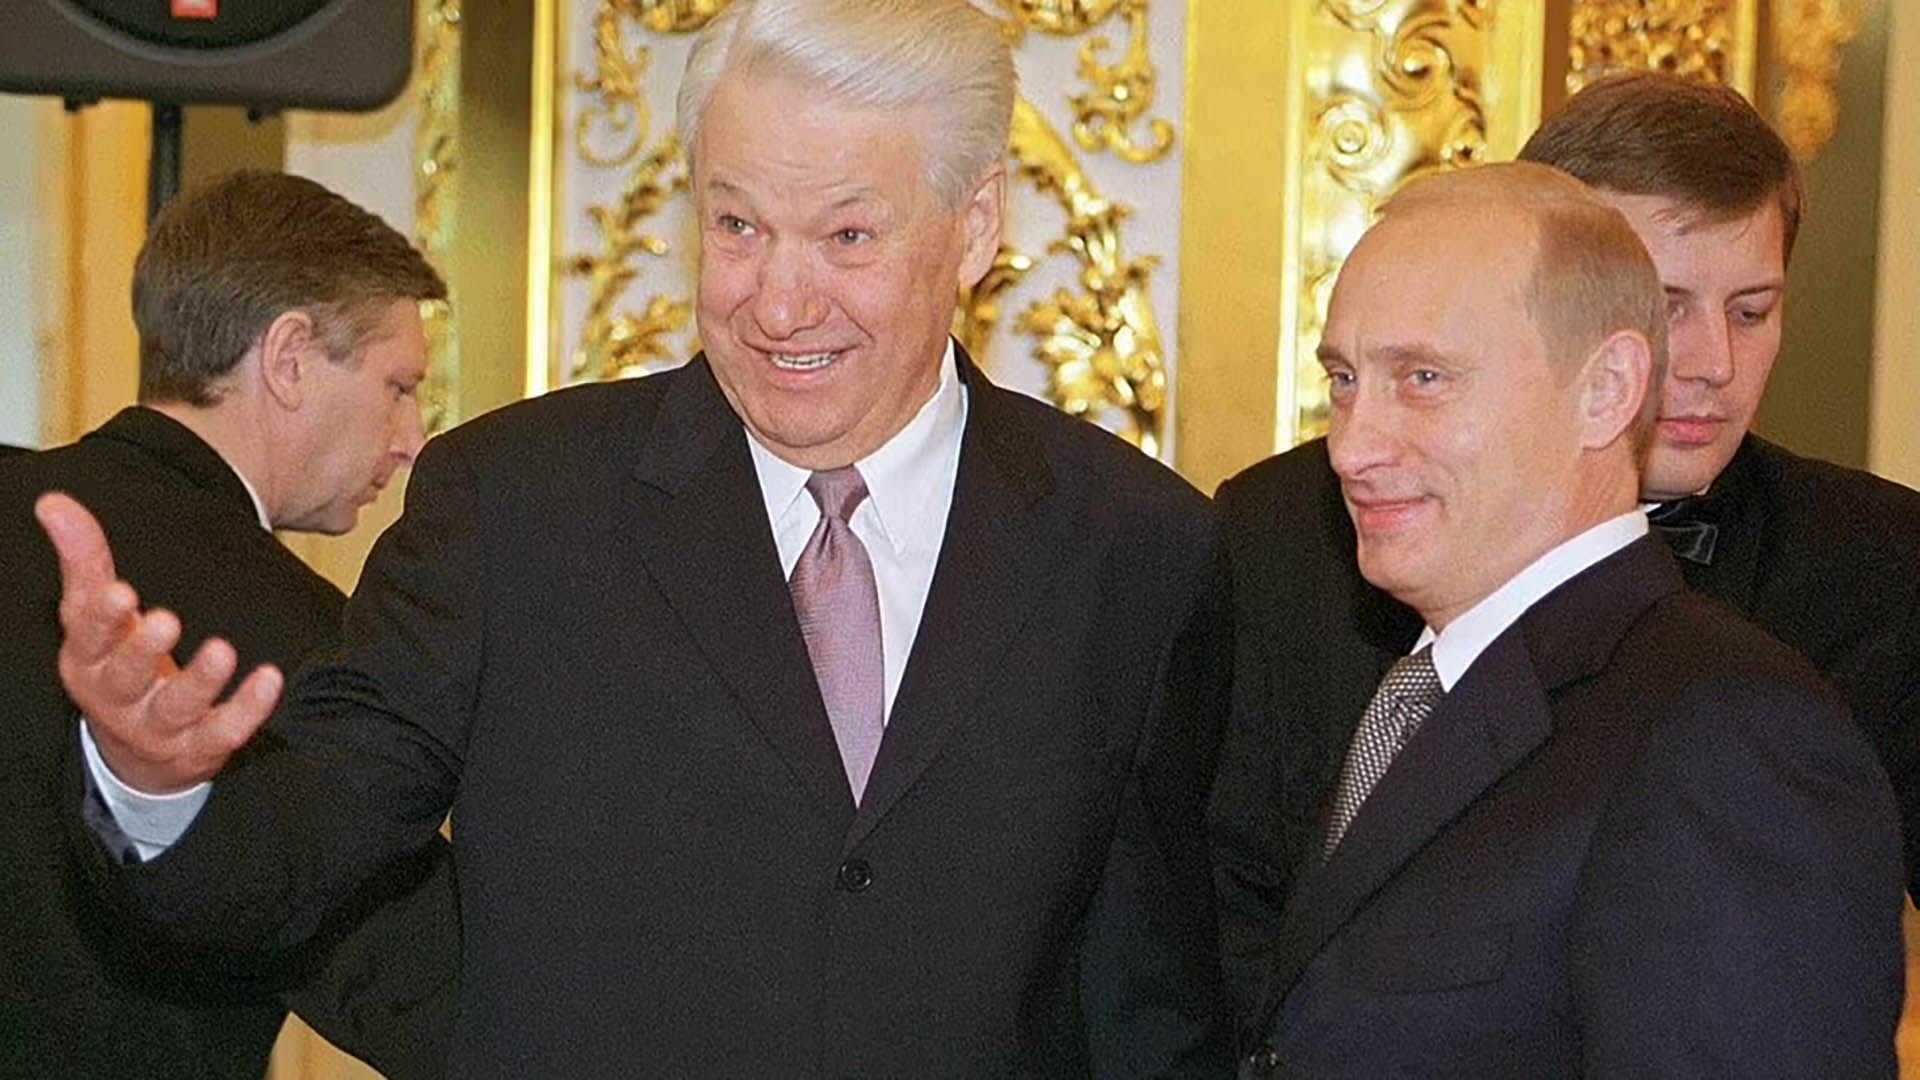 El ex presidente Boris Yeltsin gesticula mientras él y el presidente ruso Vladimir Putin, a la derecha, asisten a una recepción con motivo de la fiesta estatal en el Kremlin de Moscú, miércoles 12 de junio de 2002.